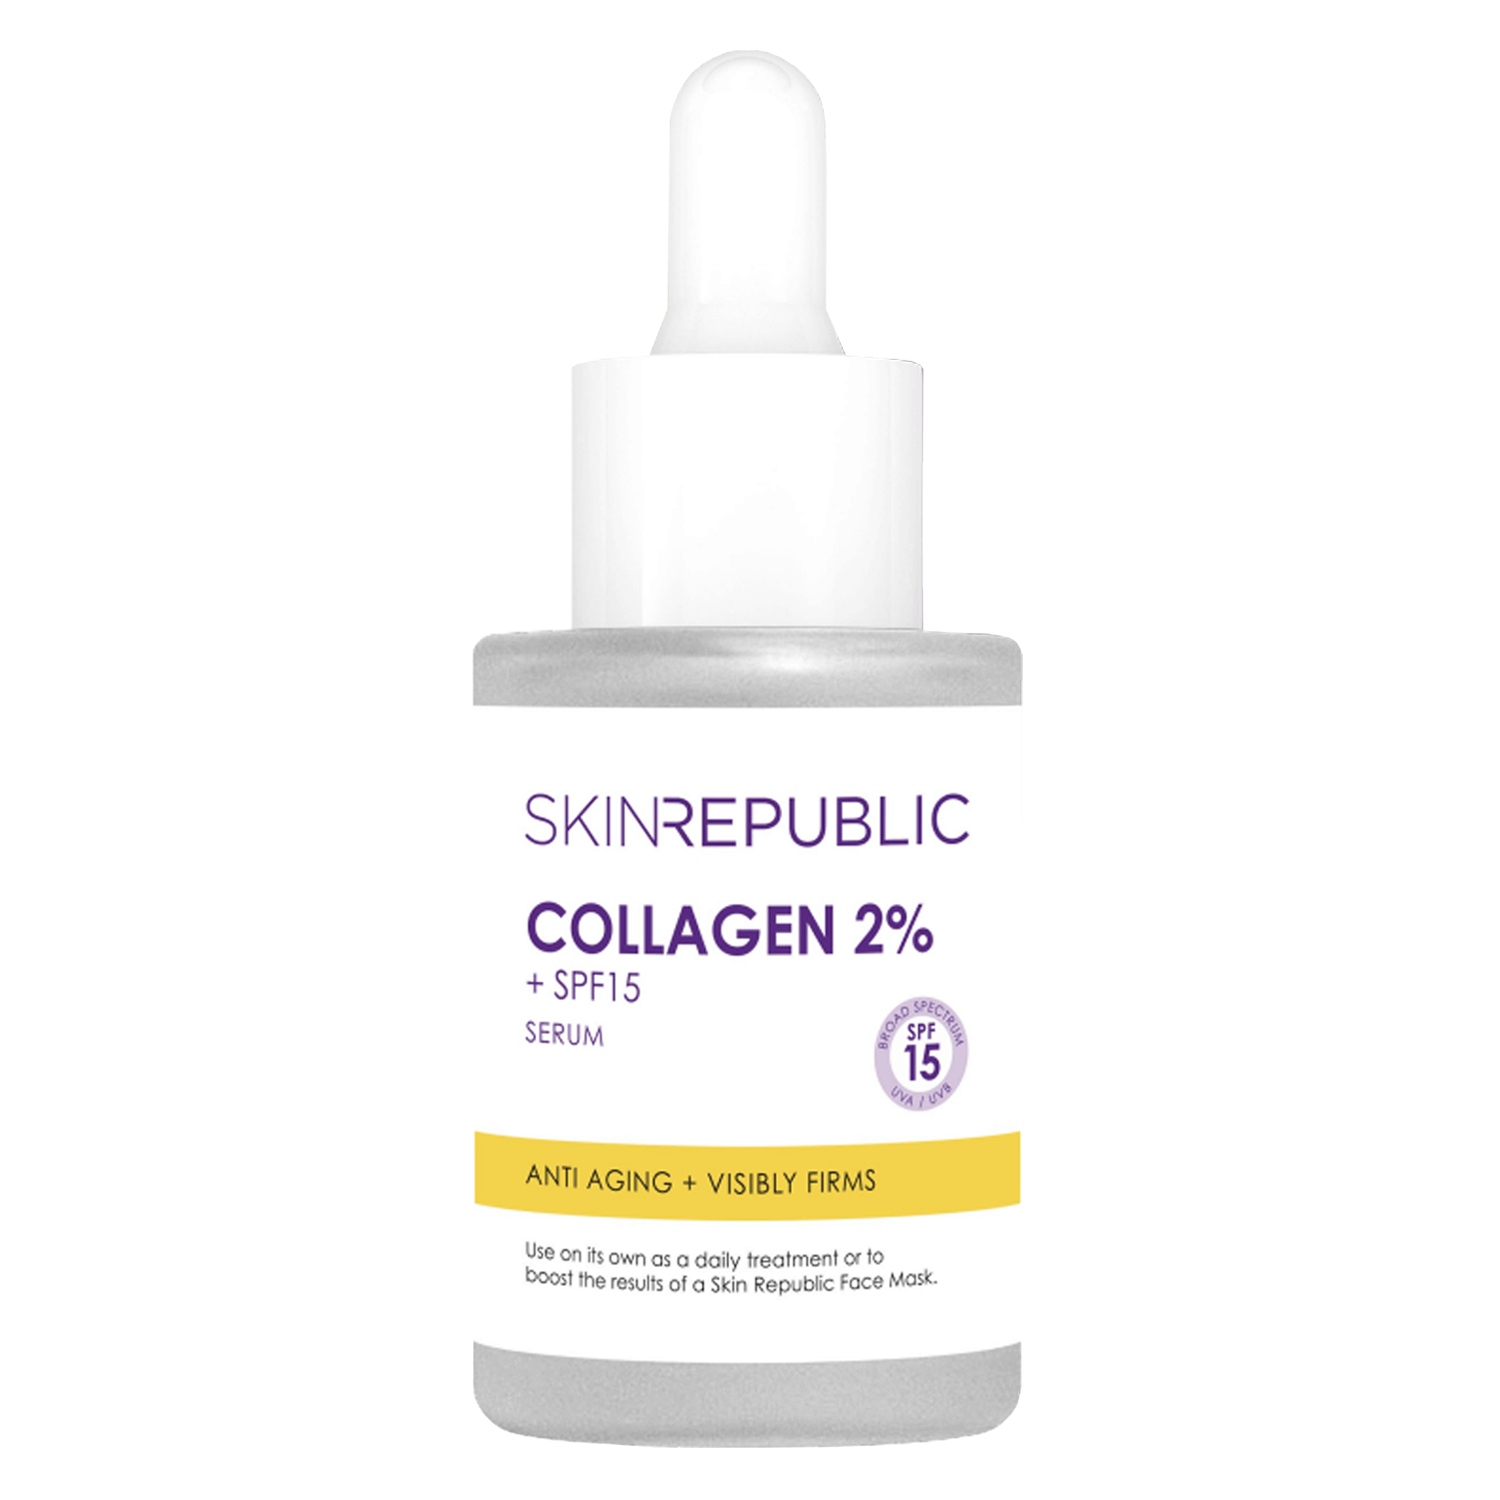 Produktbild von Skin Republic - Collagen 2% + SPF 15 Serum